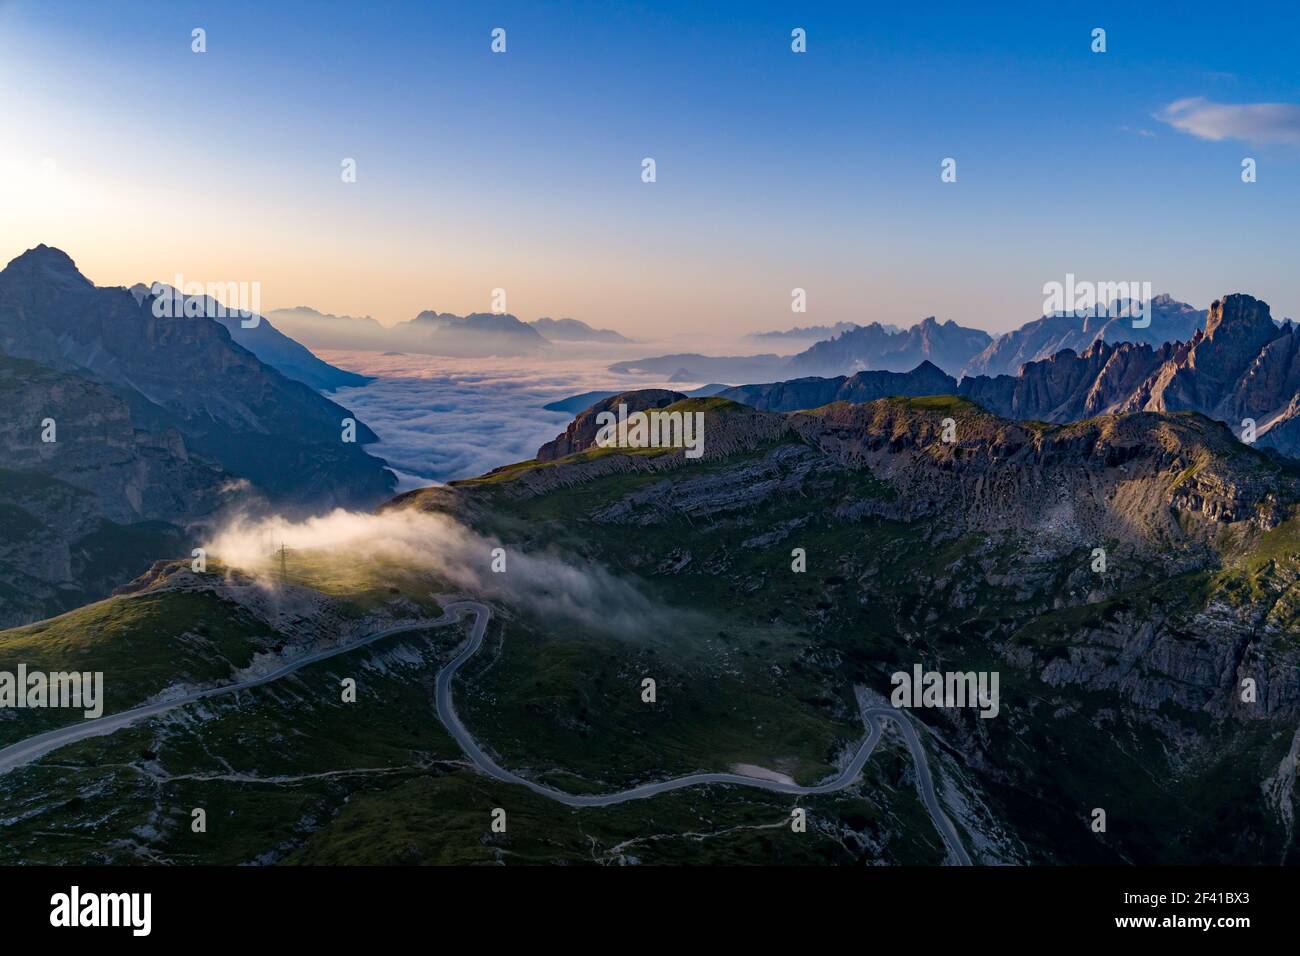 Nationalpark Drei Zinnen in den Dolomiten Alpen. Schönen natur von Italien. Antenne FPV drone Flüge bei Sonnenuntergang Stockfoto